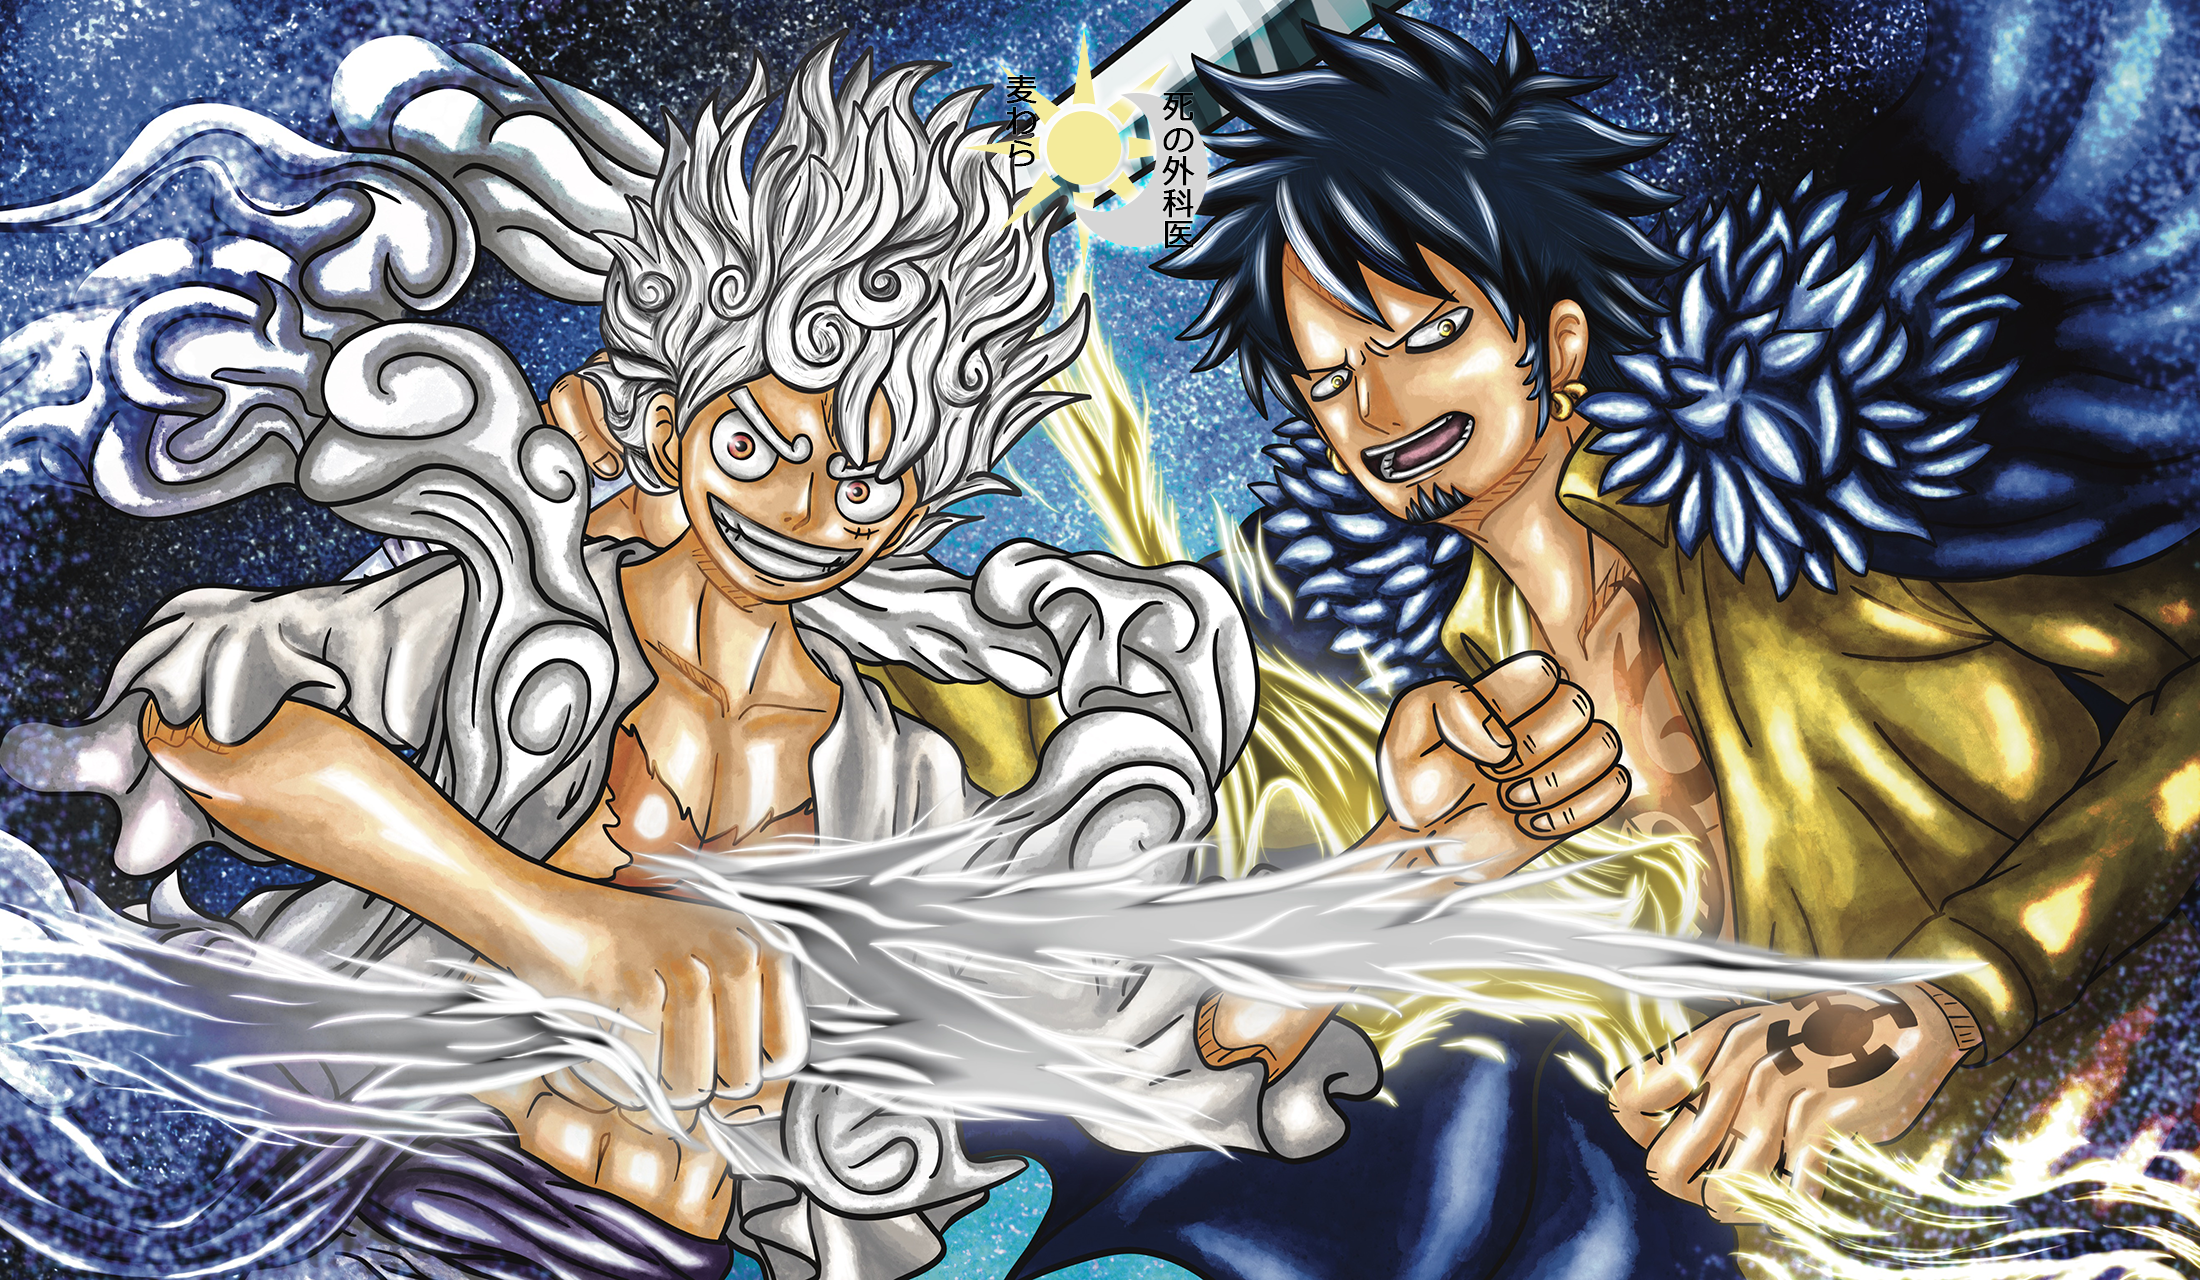 Gear 5 One Piece: Đây là một bí mật trong One Piece mà nhiều người vẫn chưa biết đến. Hãy xem những hình ảnh mới nhất liên quan đến Gear 5 One Piece và tìm hiểu thêm về nó.